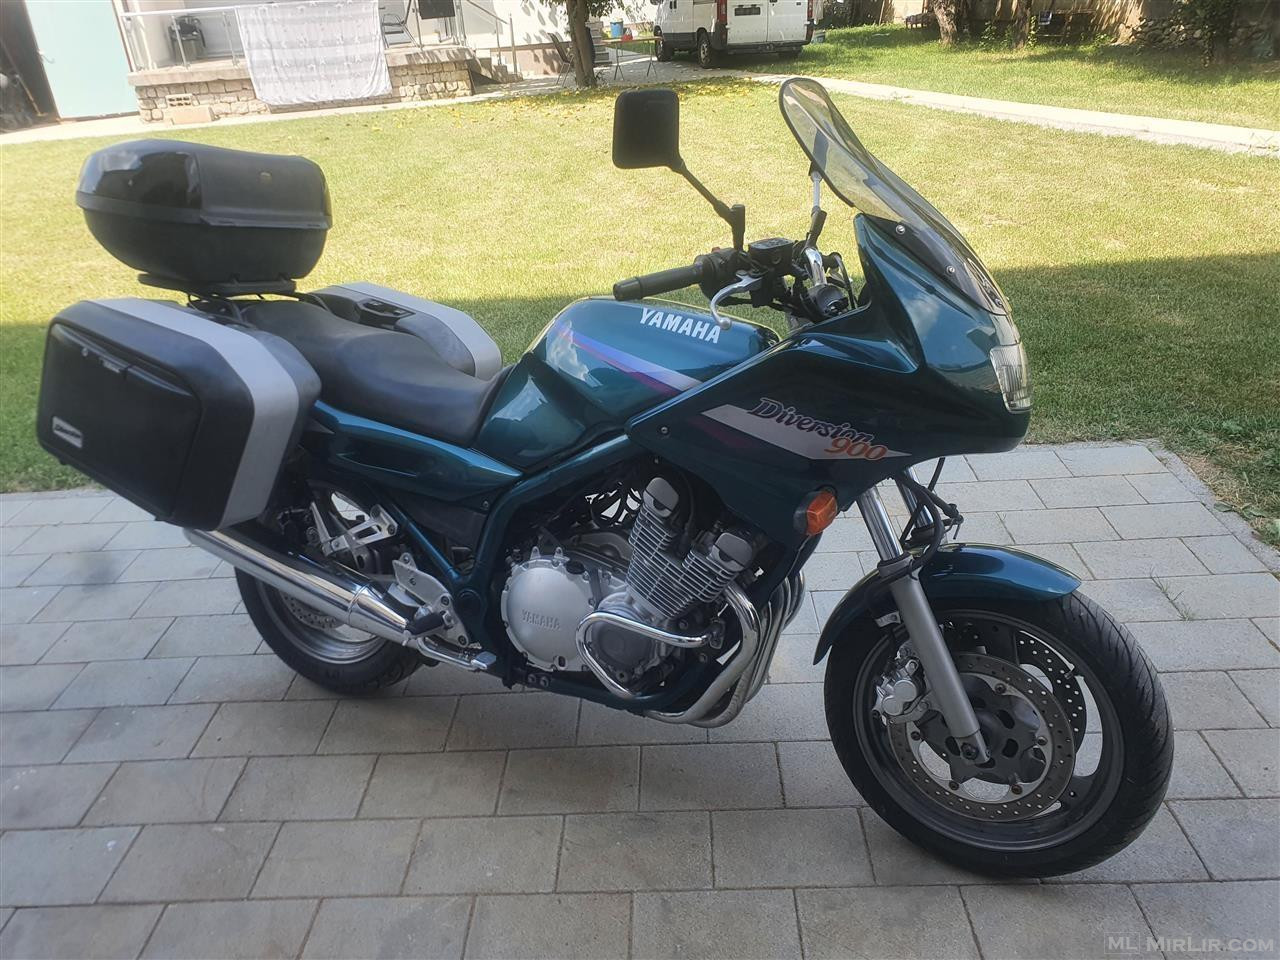 Yamaha Diversion 900cc